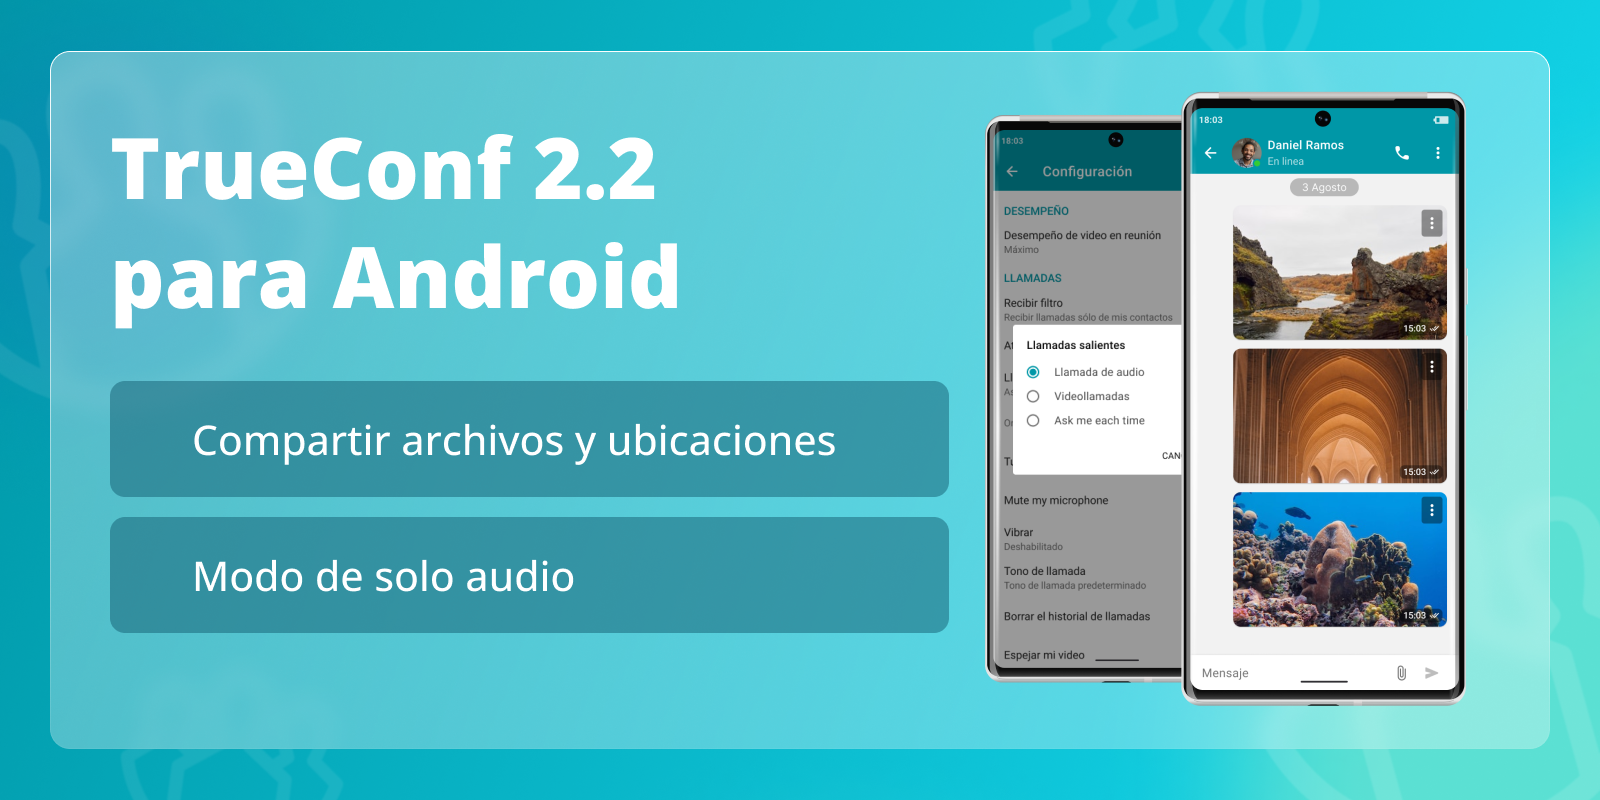 TrueConf 2.2 para Android: modo de solo audio y compartir archivos 9